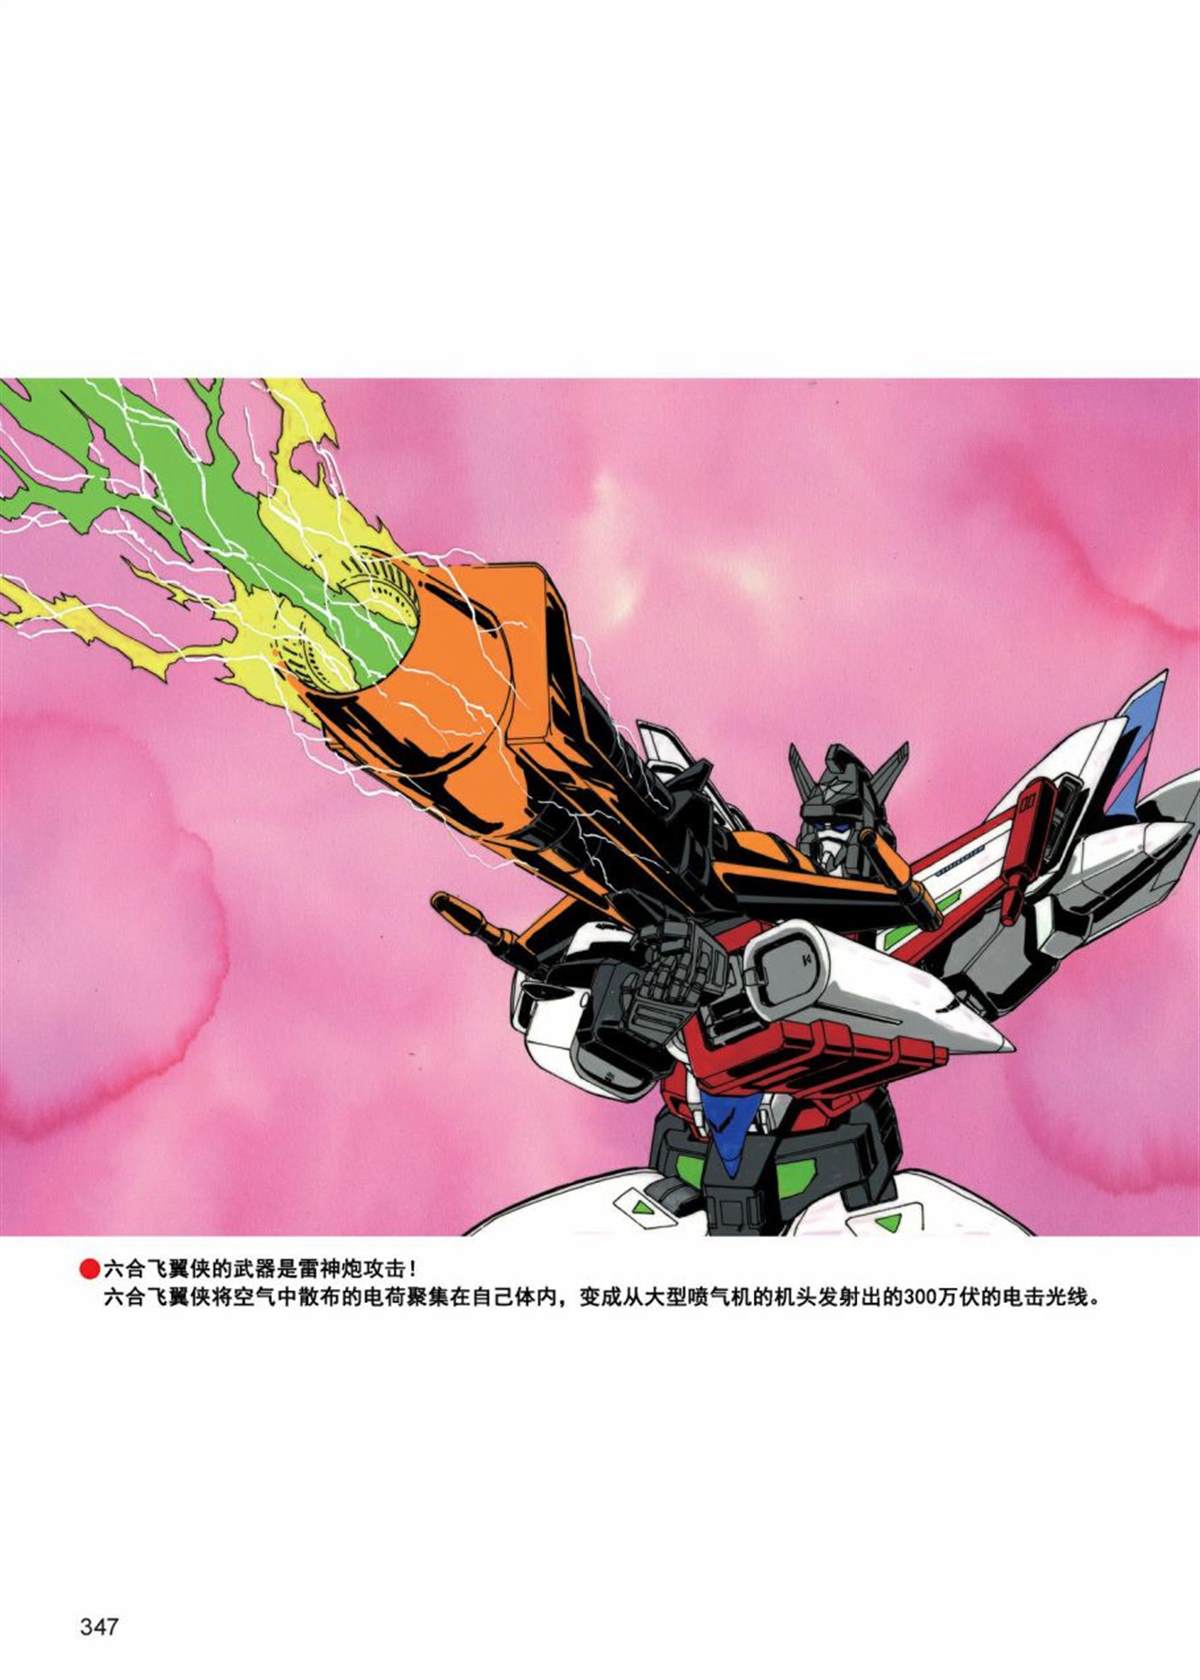 变形金刚日版G1杂志插画 - 《战斗吧！超机械生命体变形金刚：合体大作战》 - 2